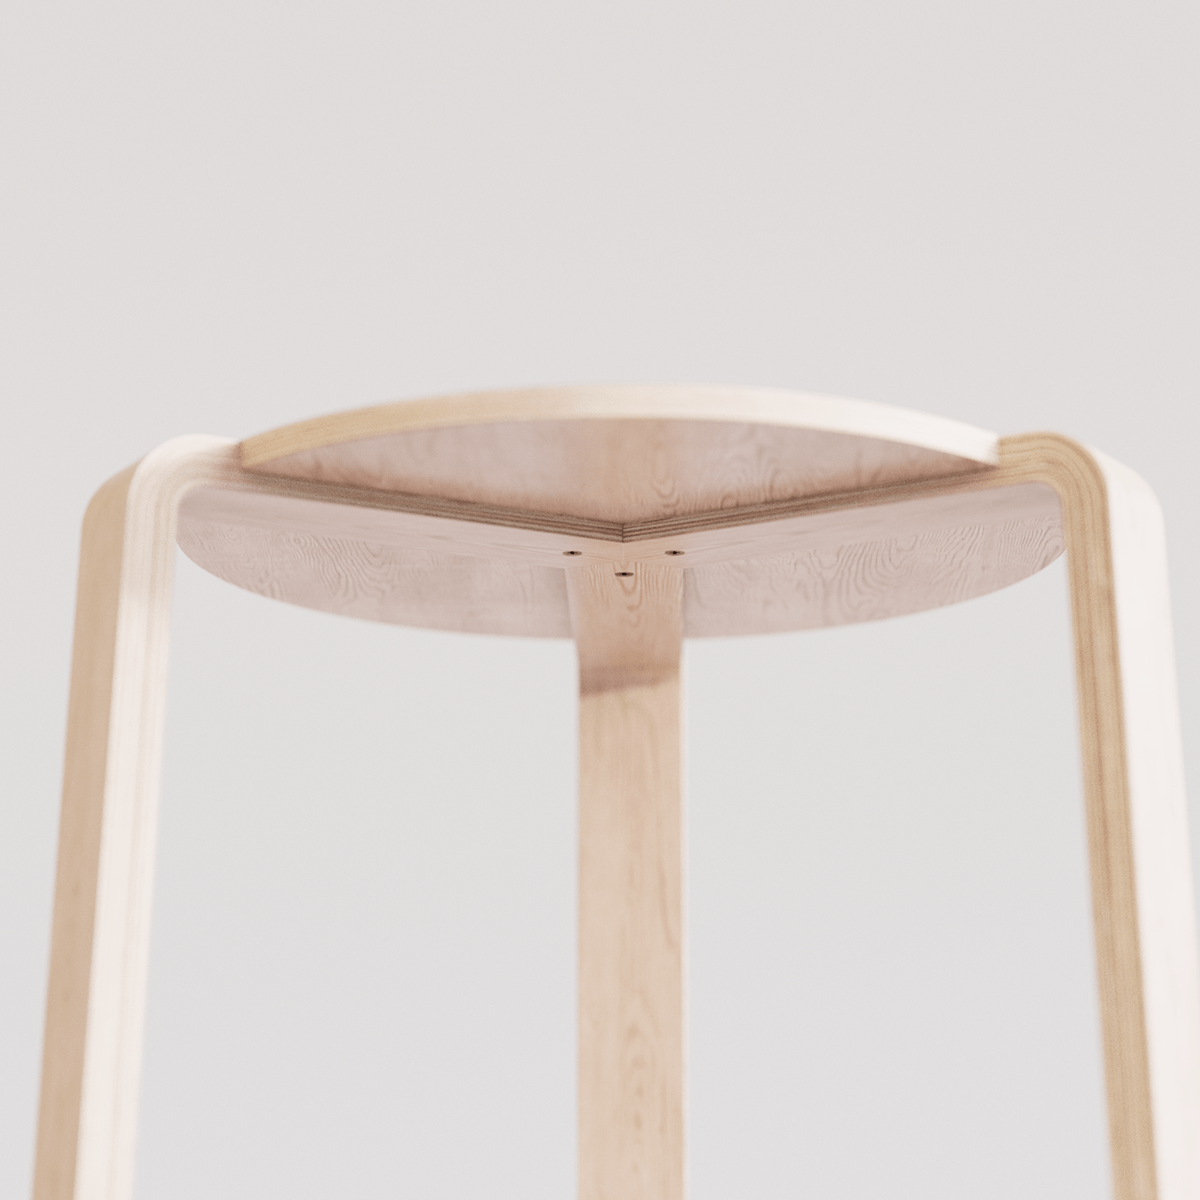 design furniture product design  Render stool visualization wood CGI designer Packaging